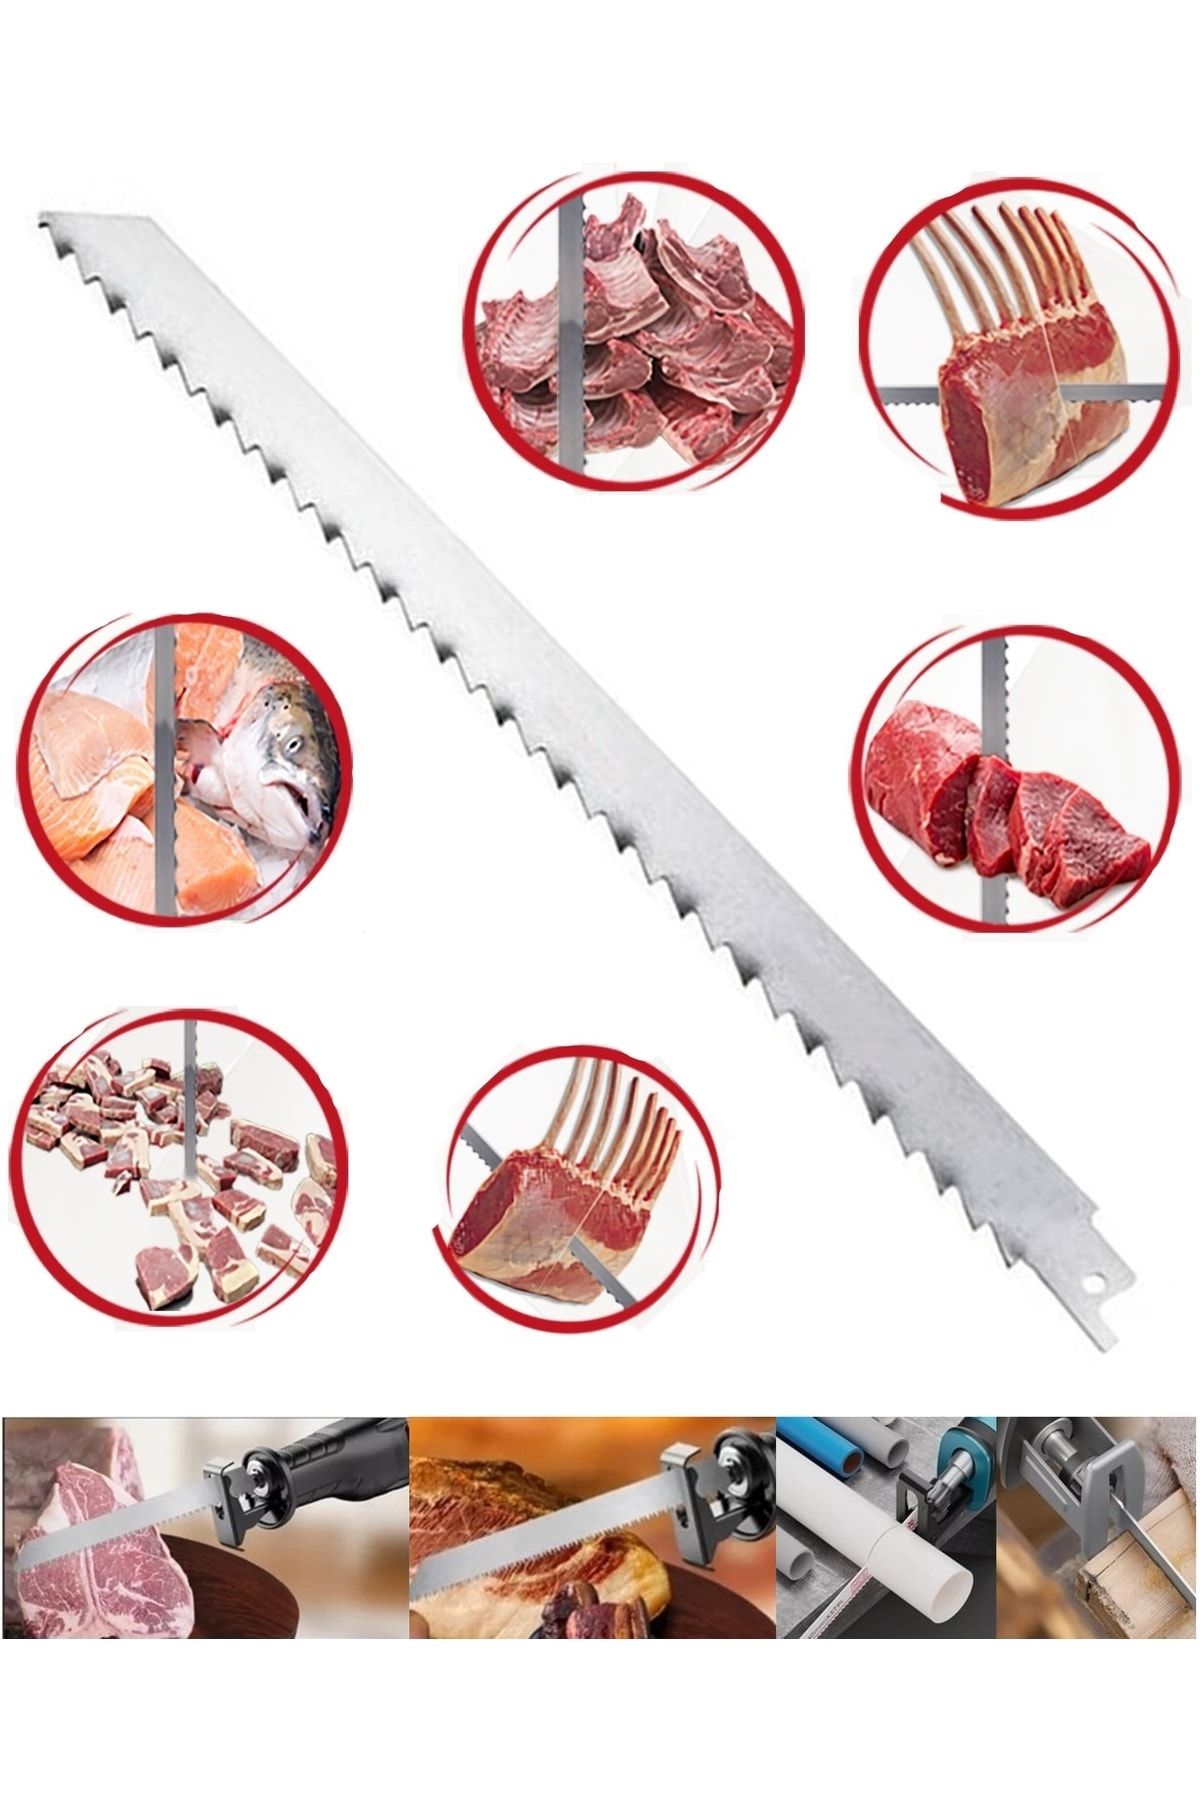 GATOR Tilki Kuyruğu Testeresi Kemik Et Kesme Bıçağı Ucu 30 Cm Paslanmaz Çelik Boyasız